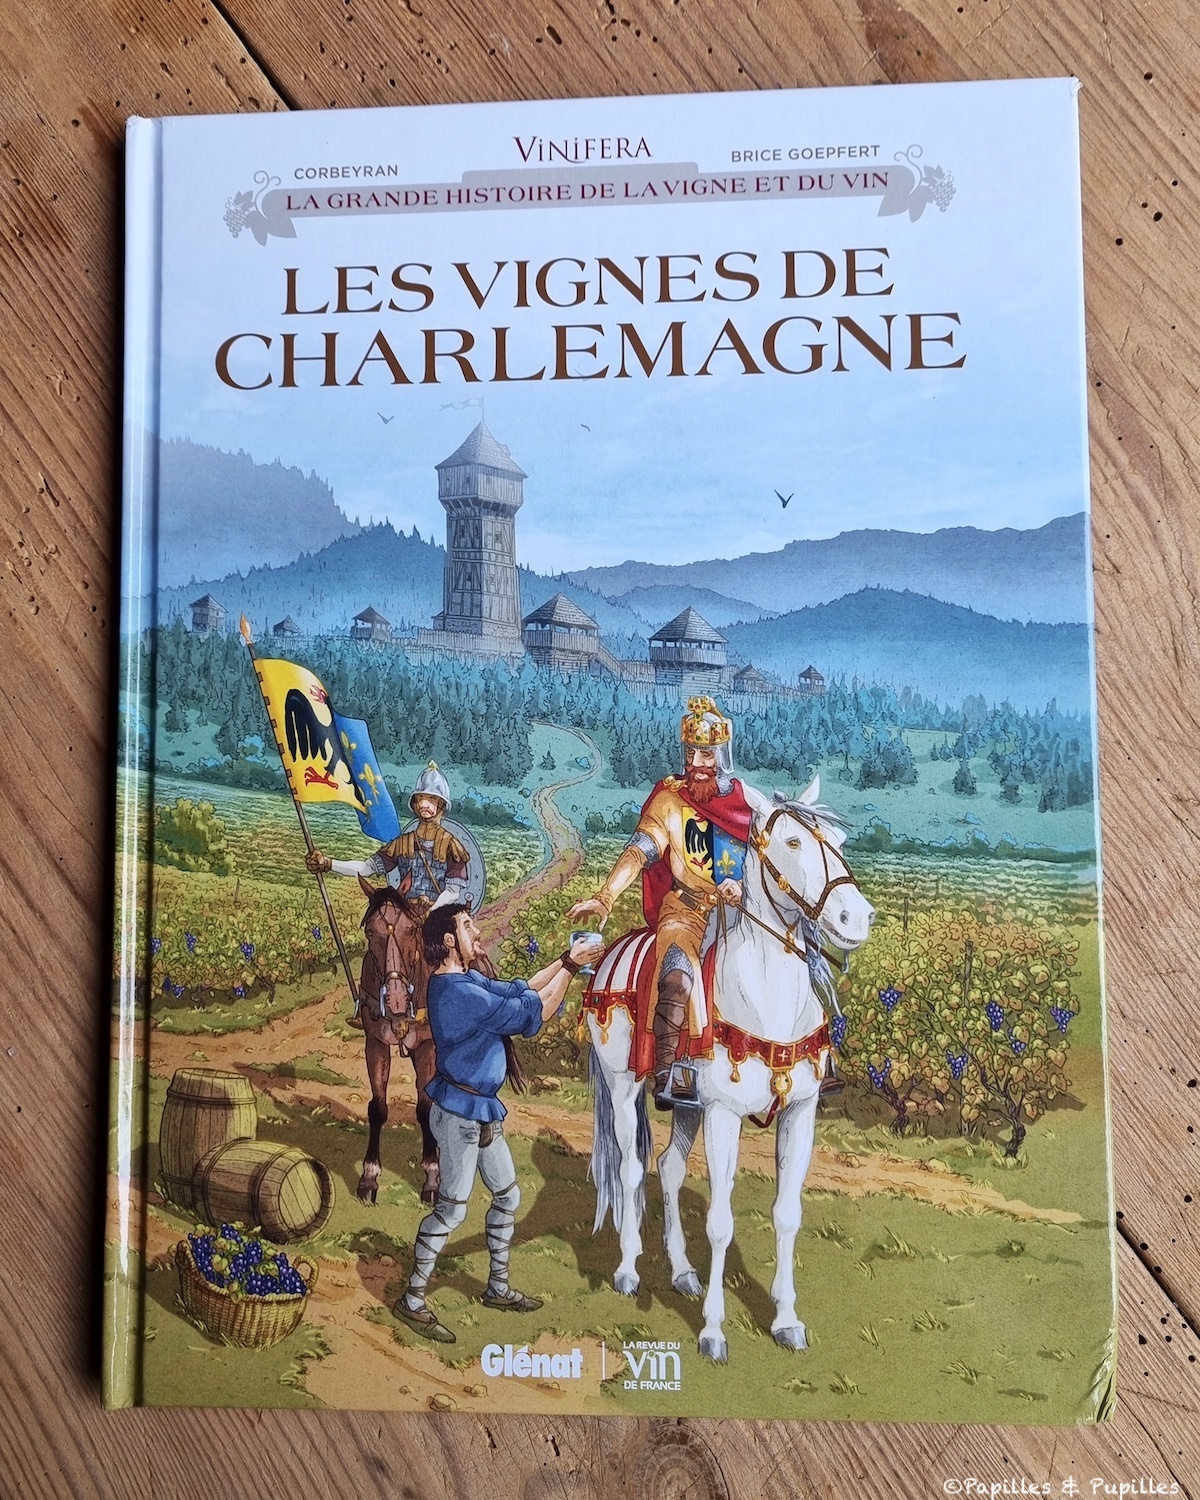 Les vignes de Charlemagne